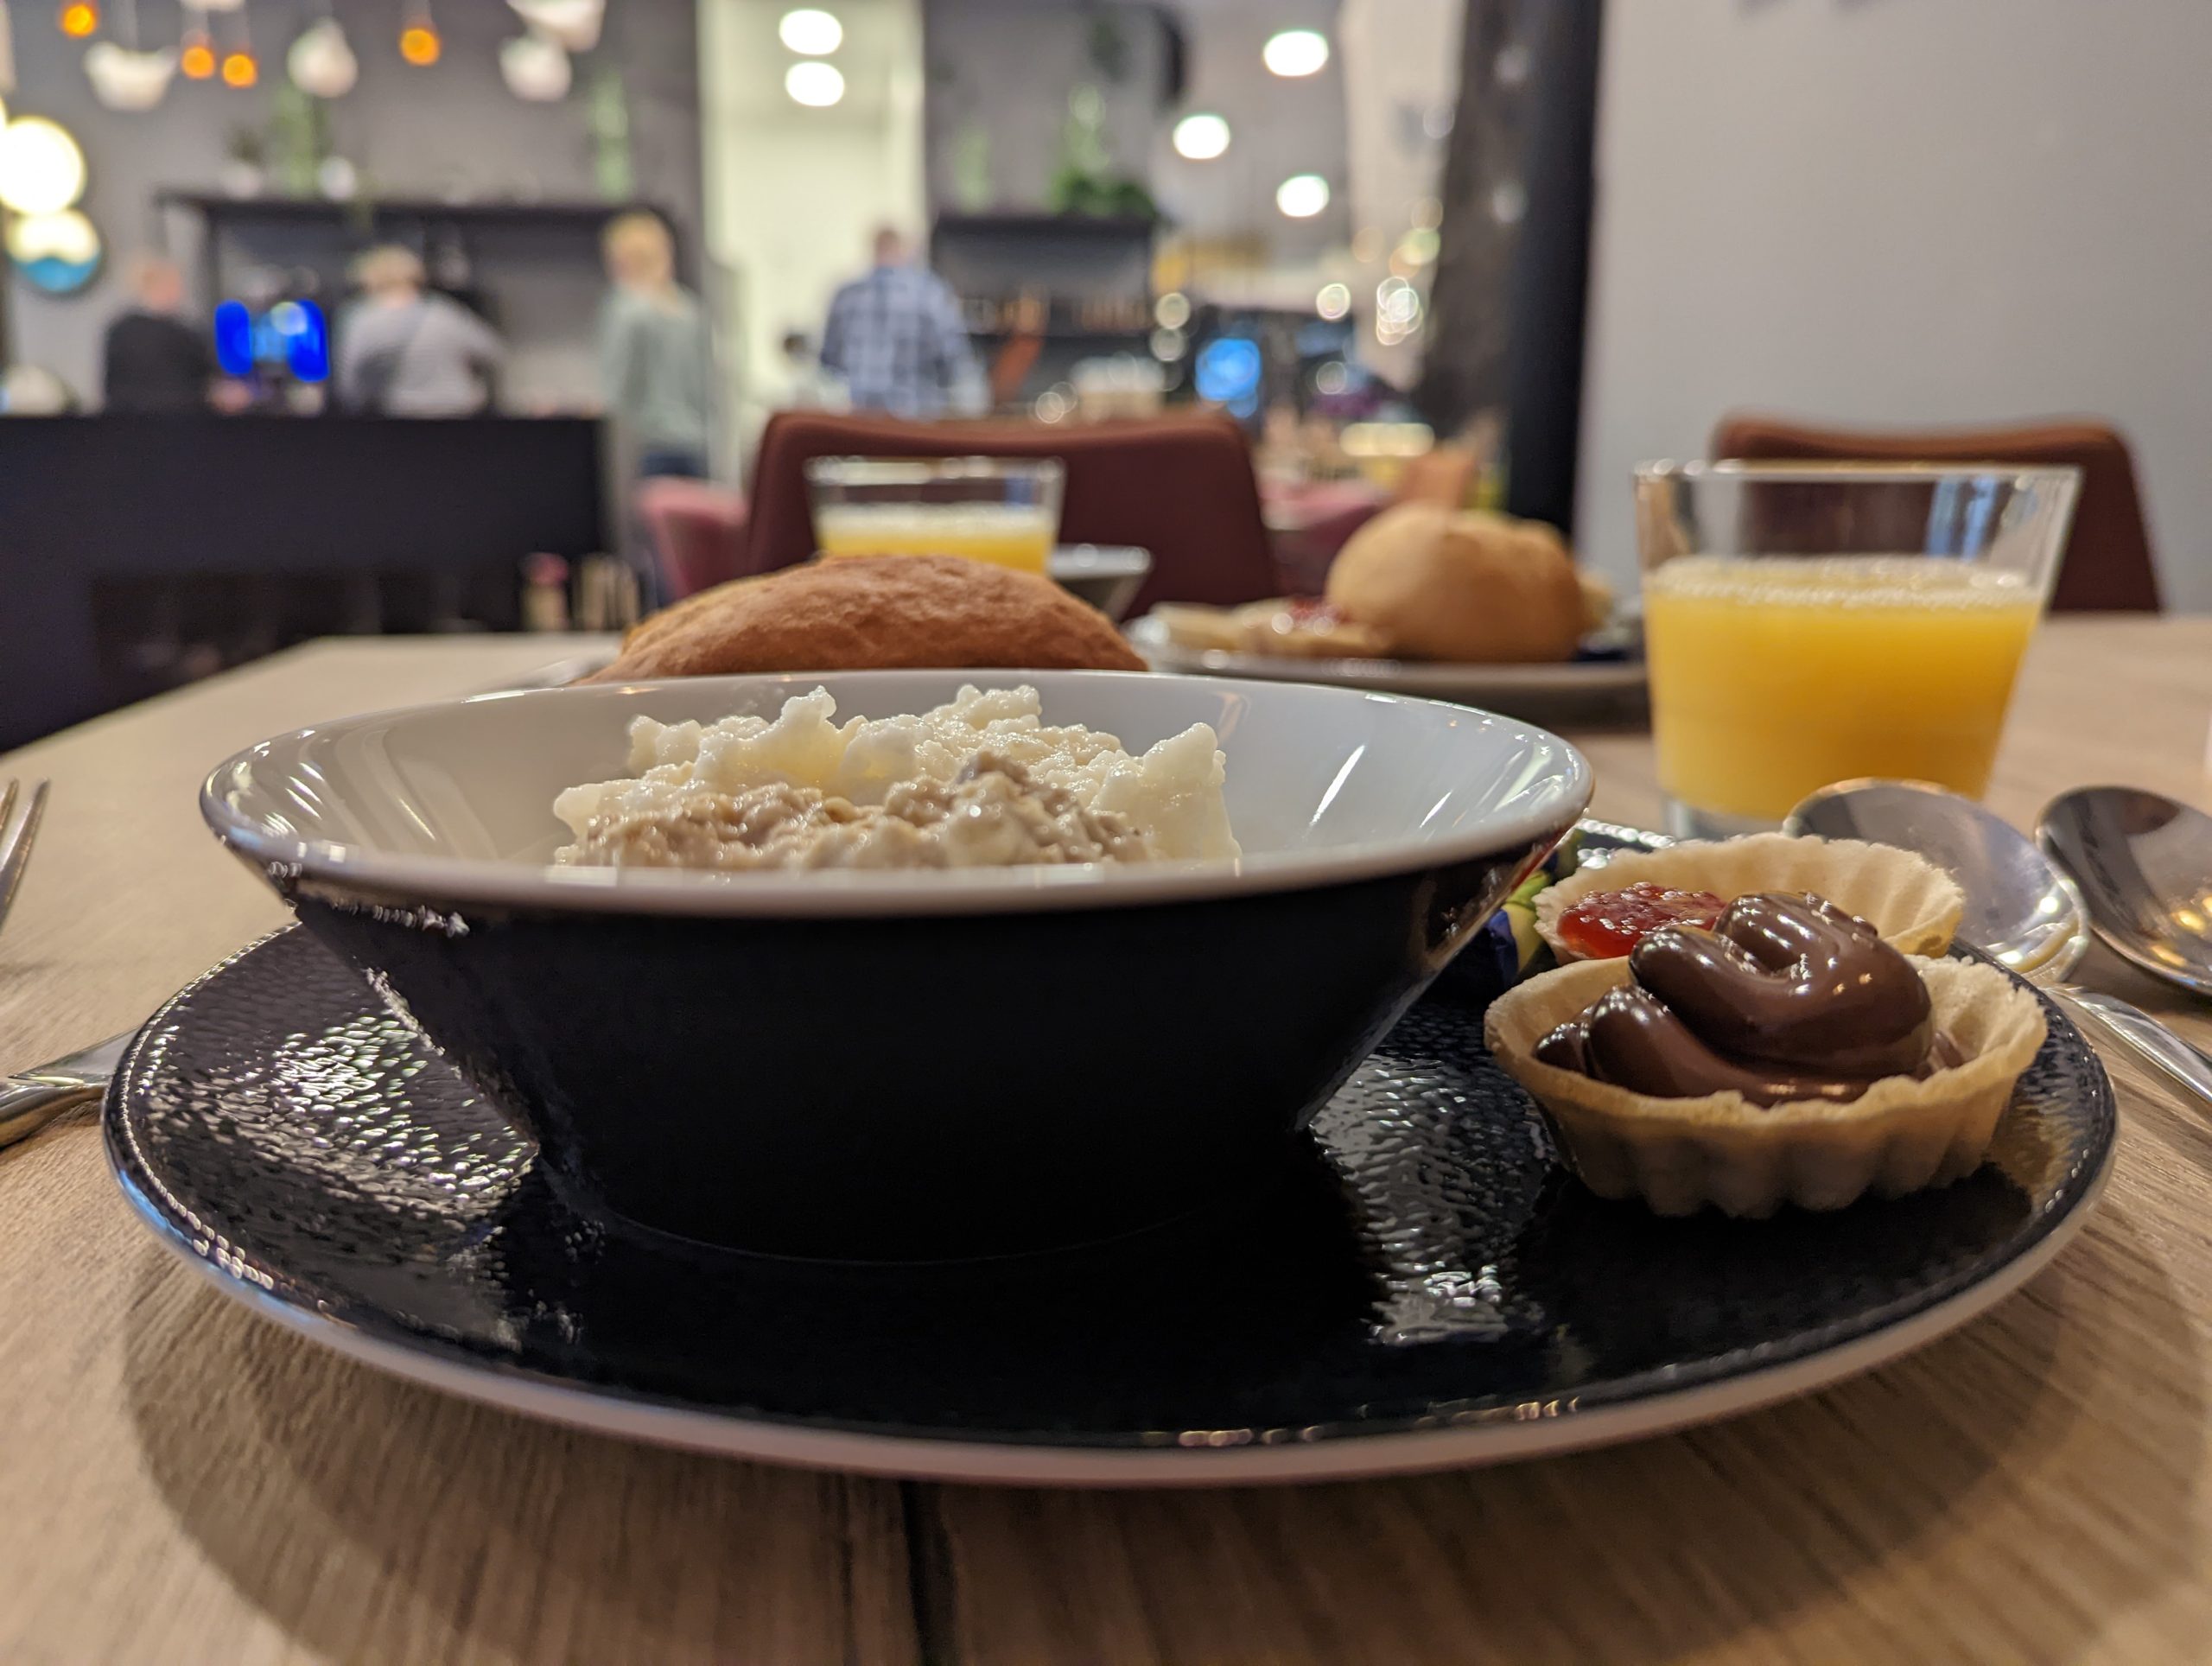 Das Bild zeigt einen Frühstücksteller im Hotel Niu Cobbles in Essen